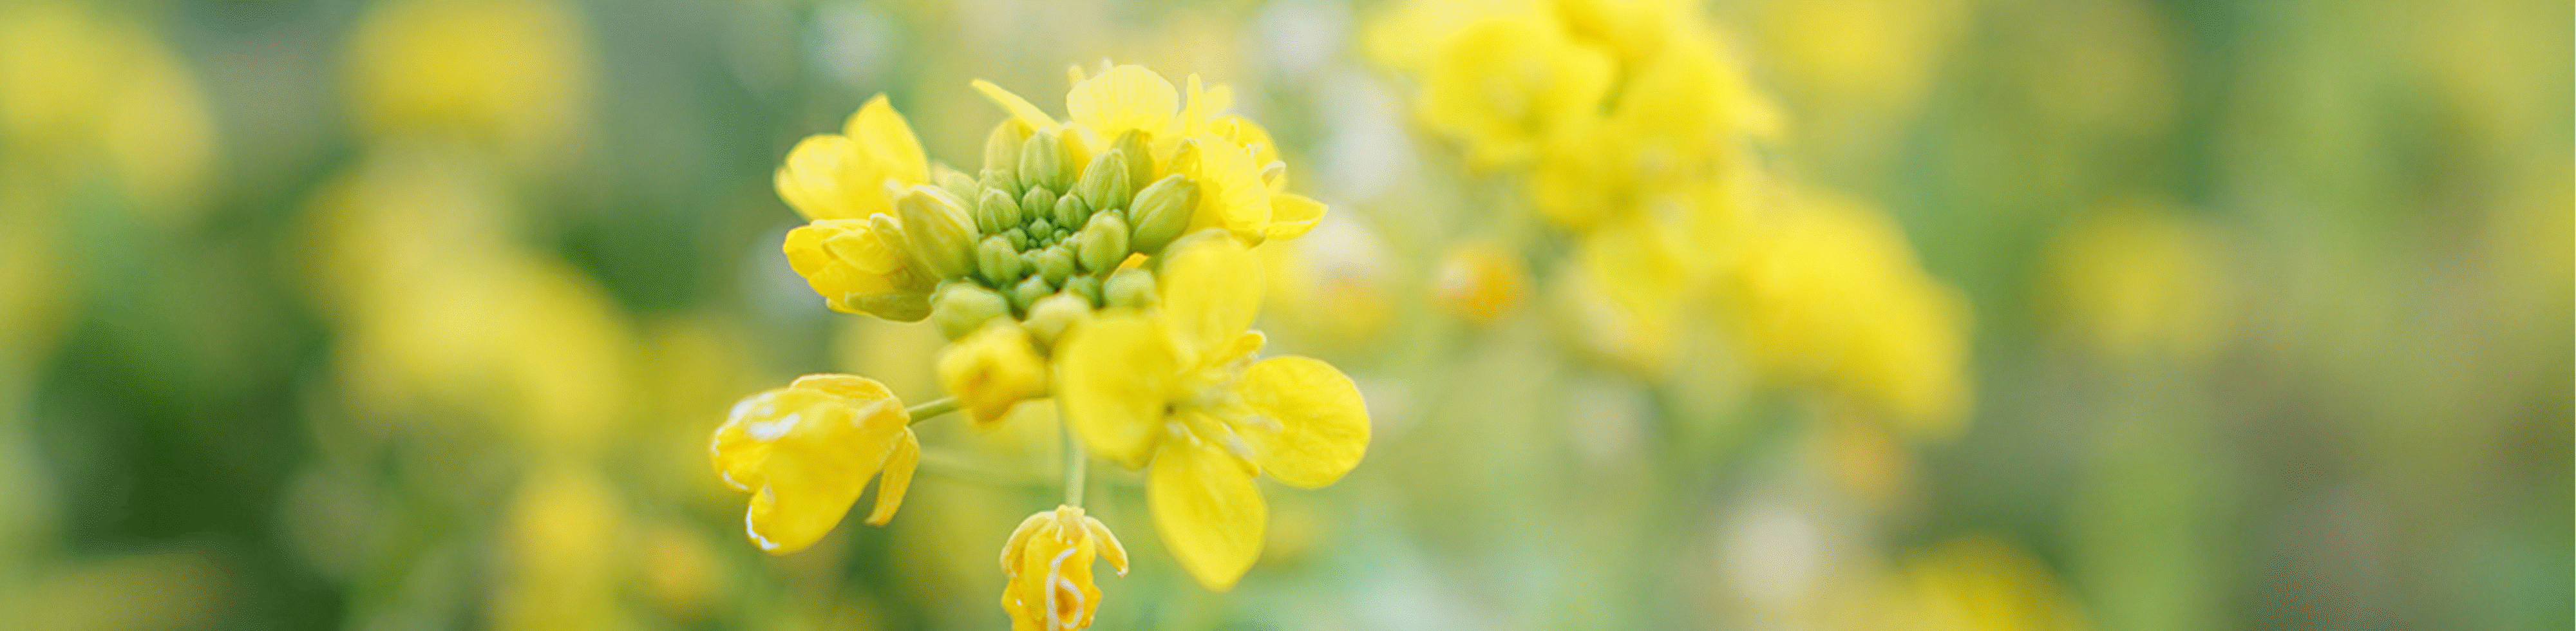 ภาพของดอกไม้สีเหลือง